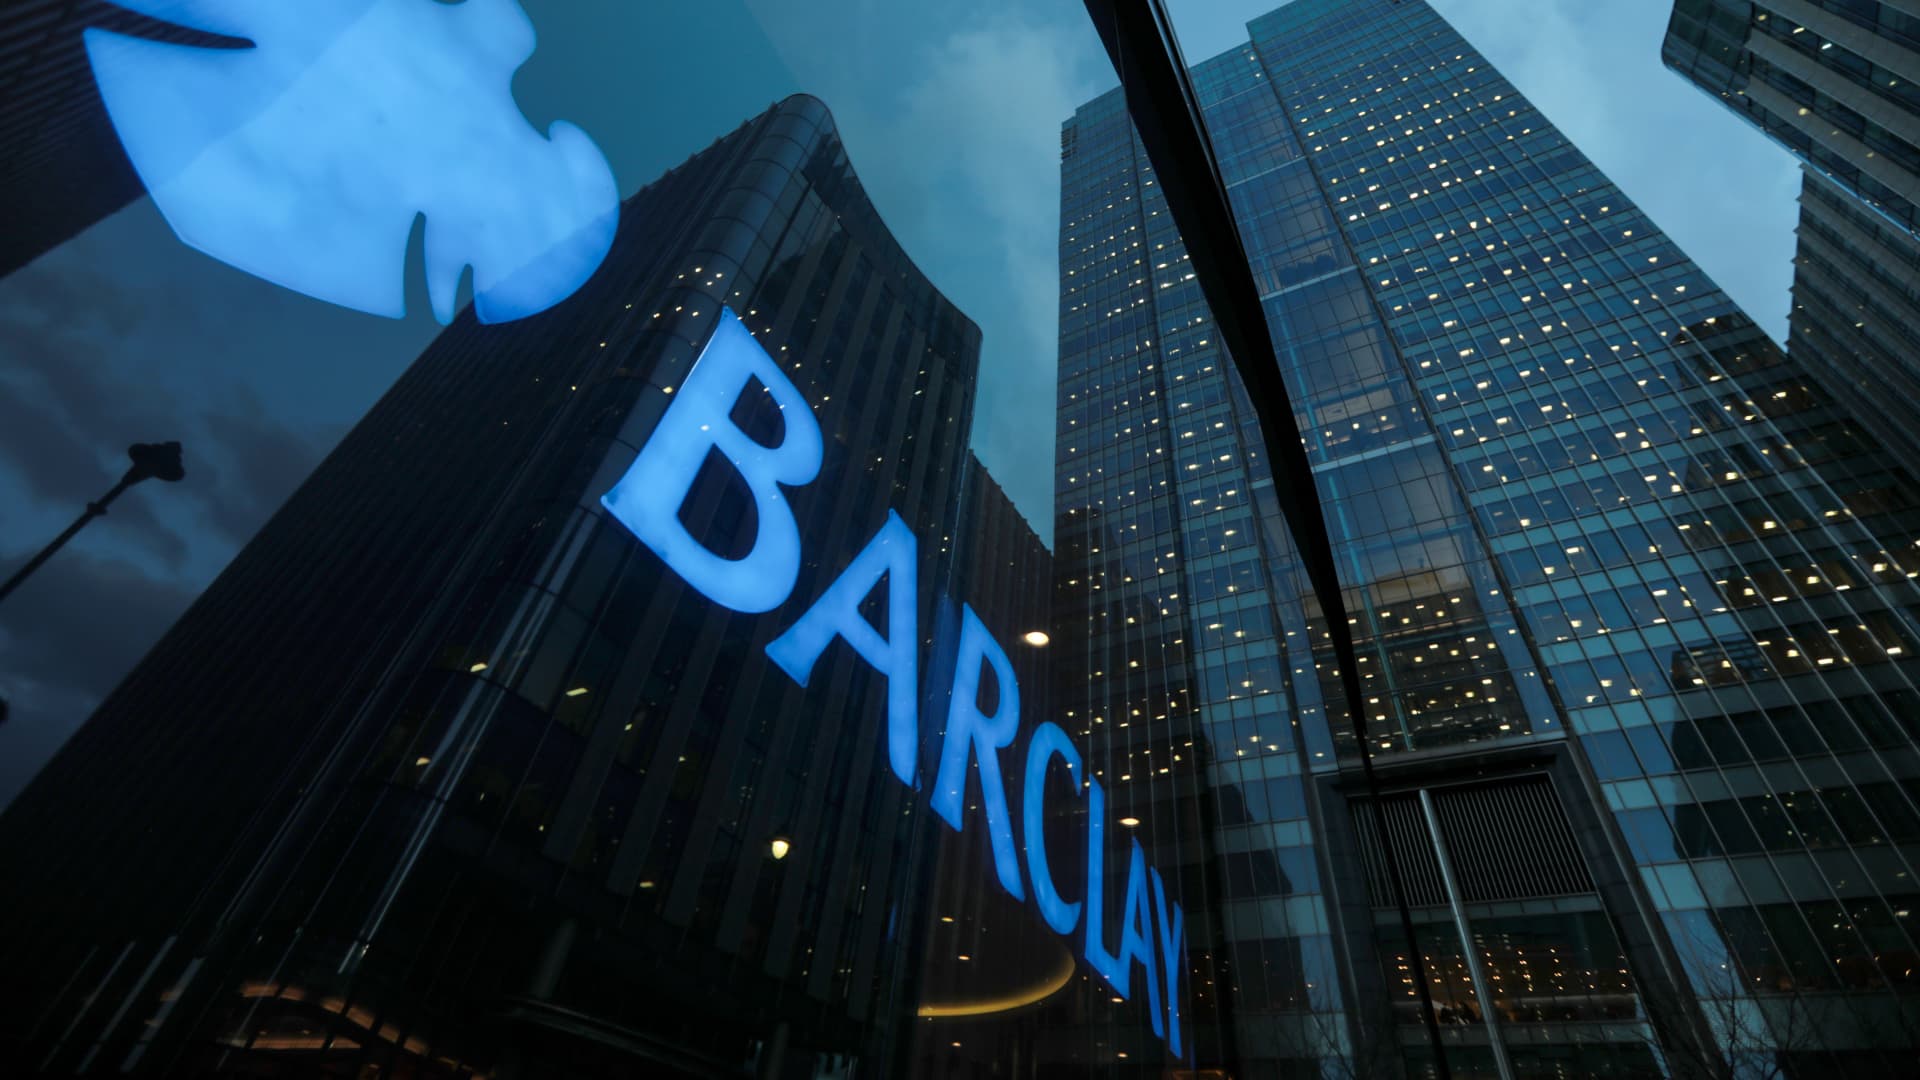 Barclays Head Office in London